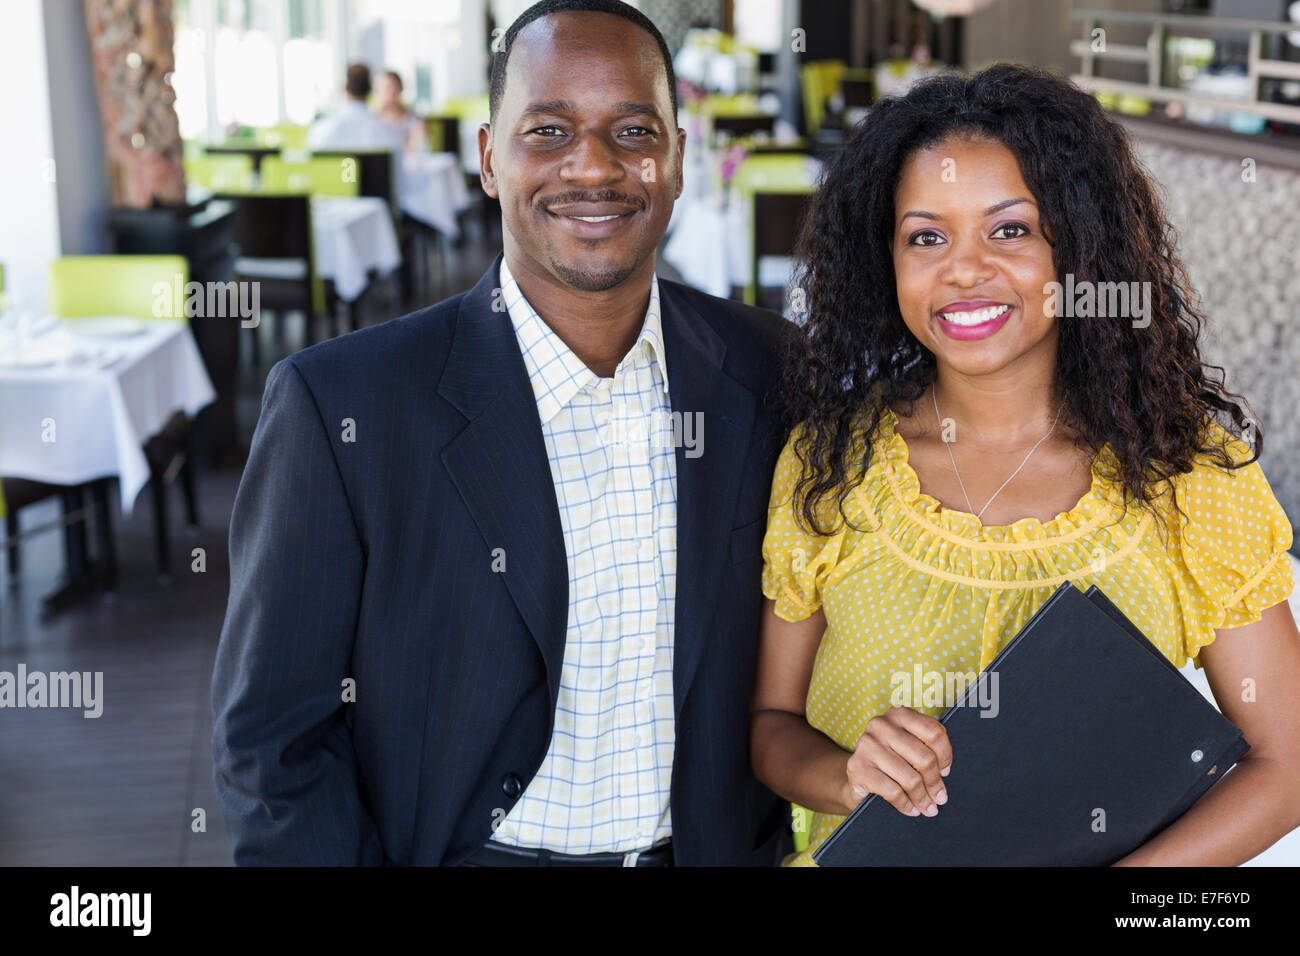 Afrikanische amerikanische paar lächelnd in restaurant Stockfoto